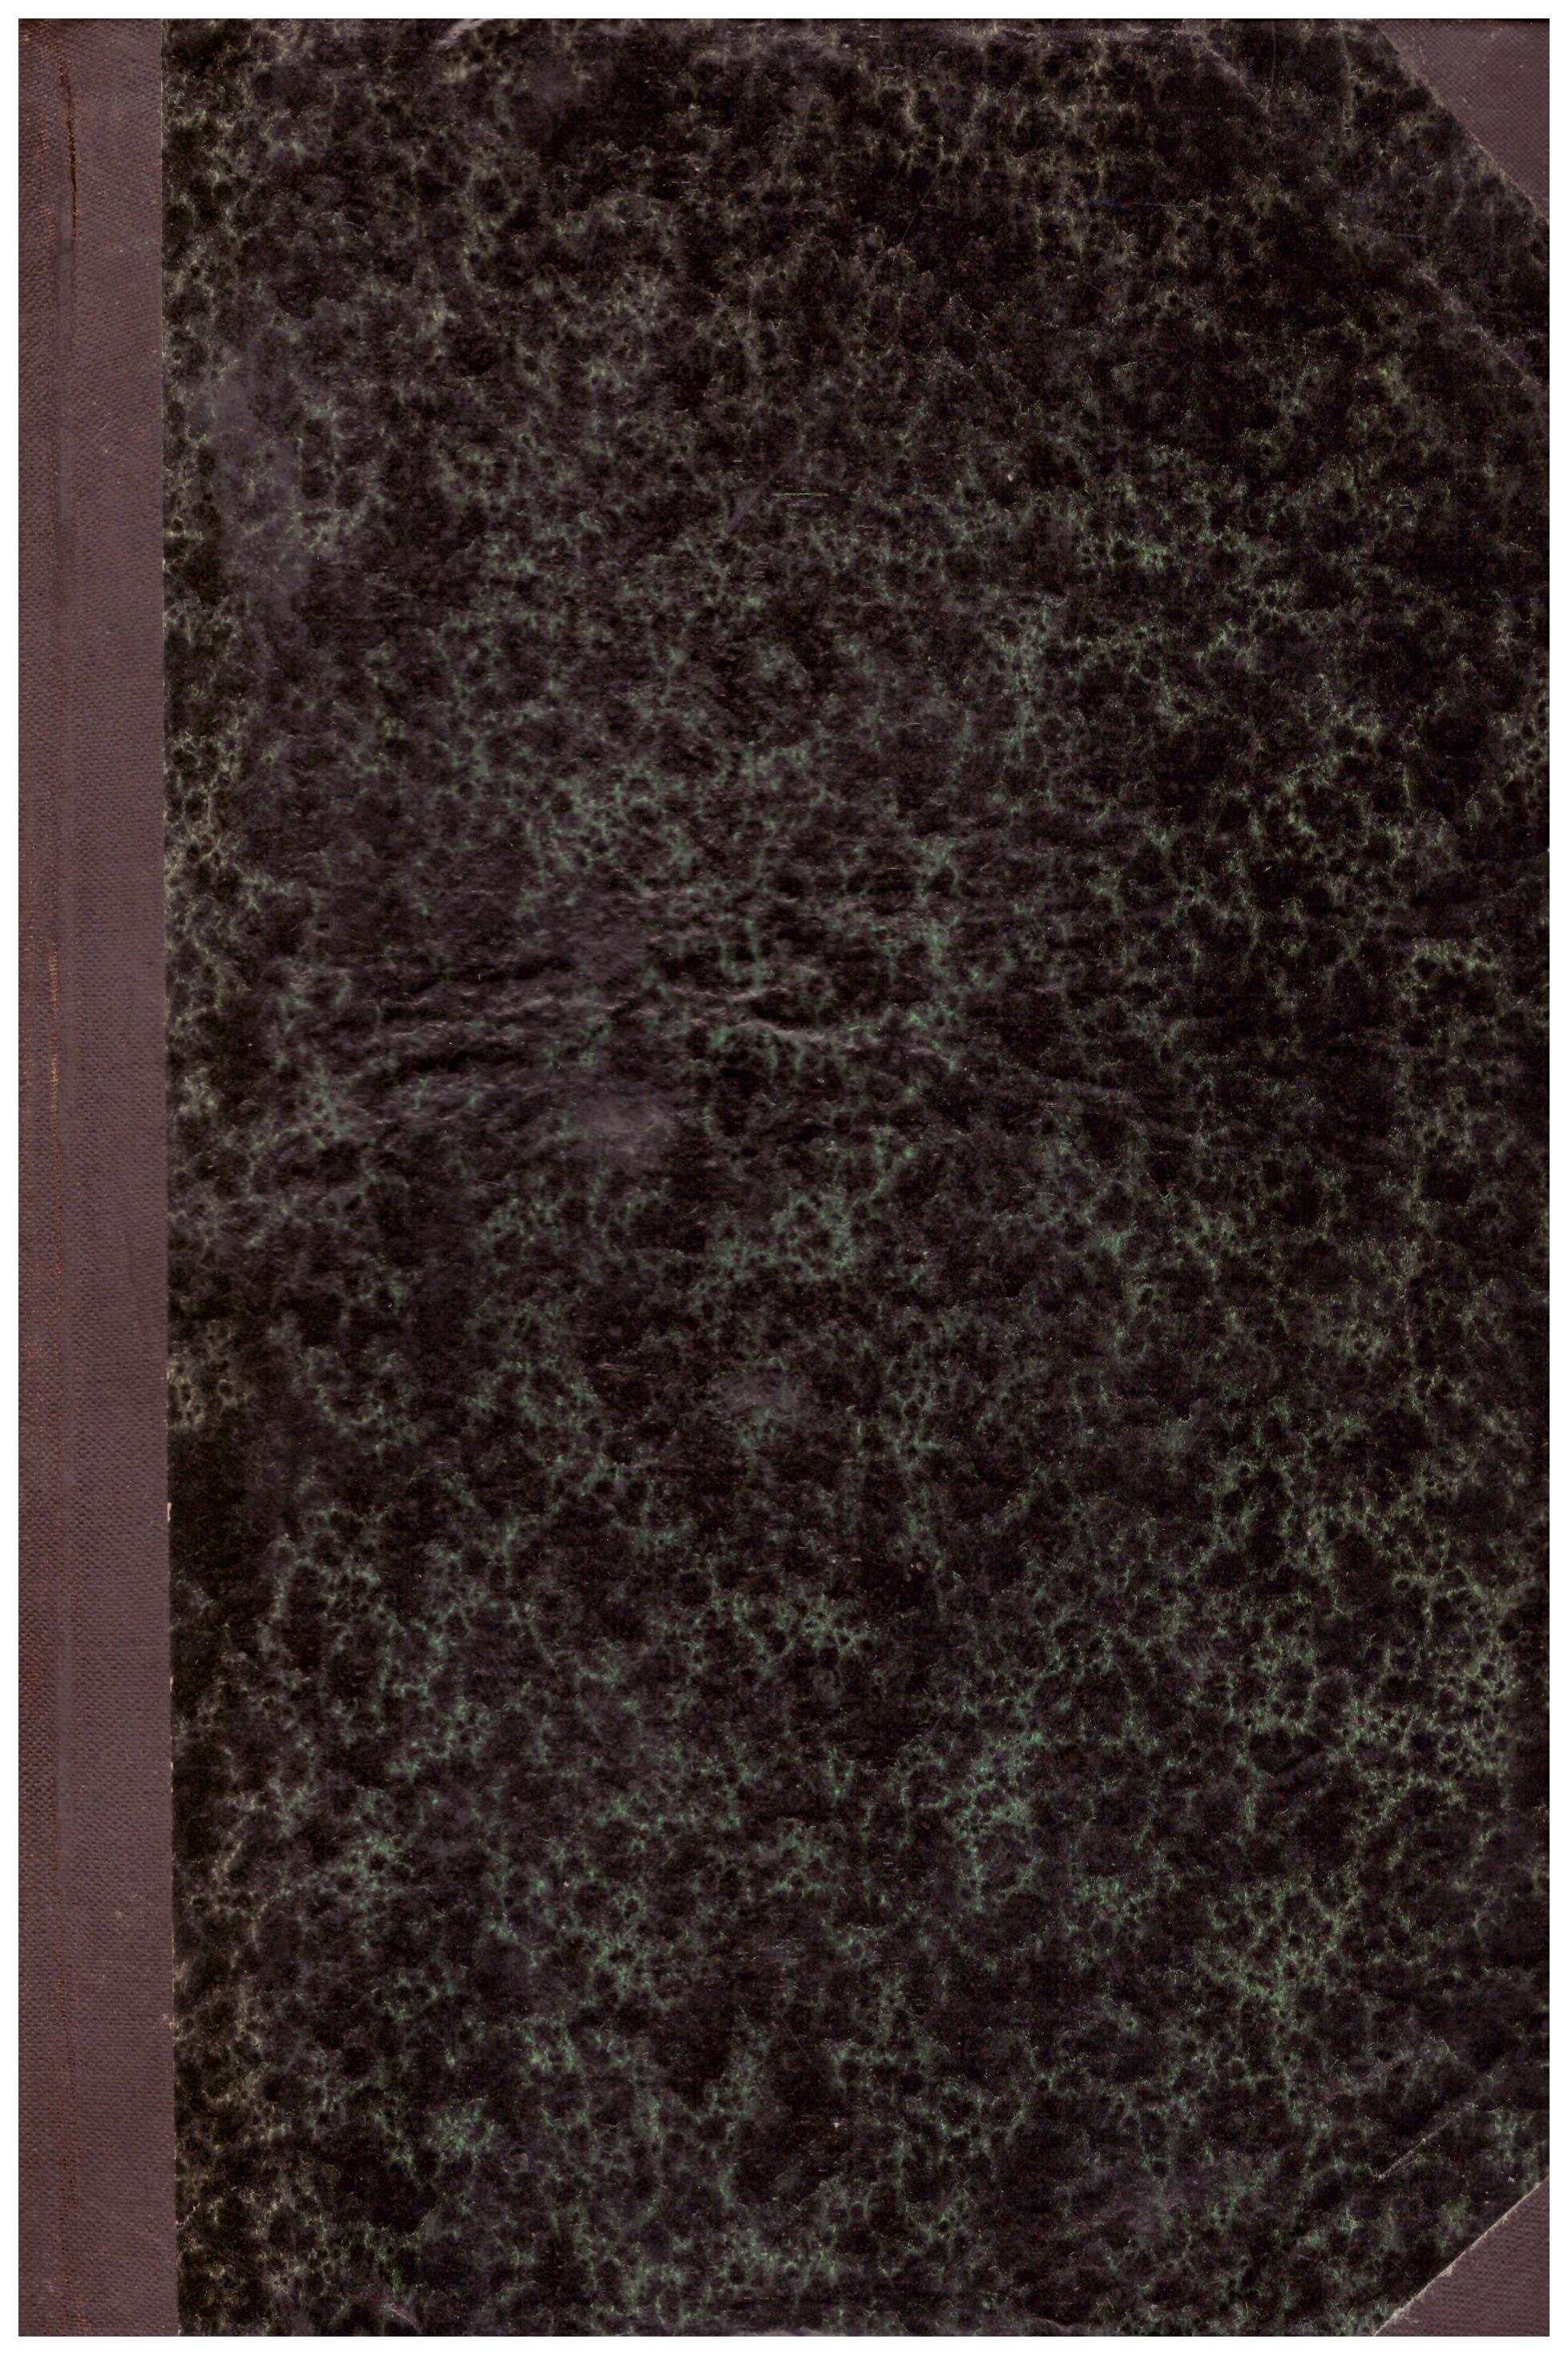 Titolo: Sant'Alfonso Maria de Liguori 2 volumi Autore : P. Agostino Berthe Editore: tipografia Barbera Firenze 1903